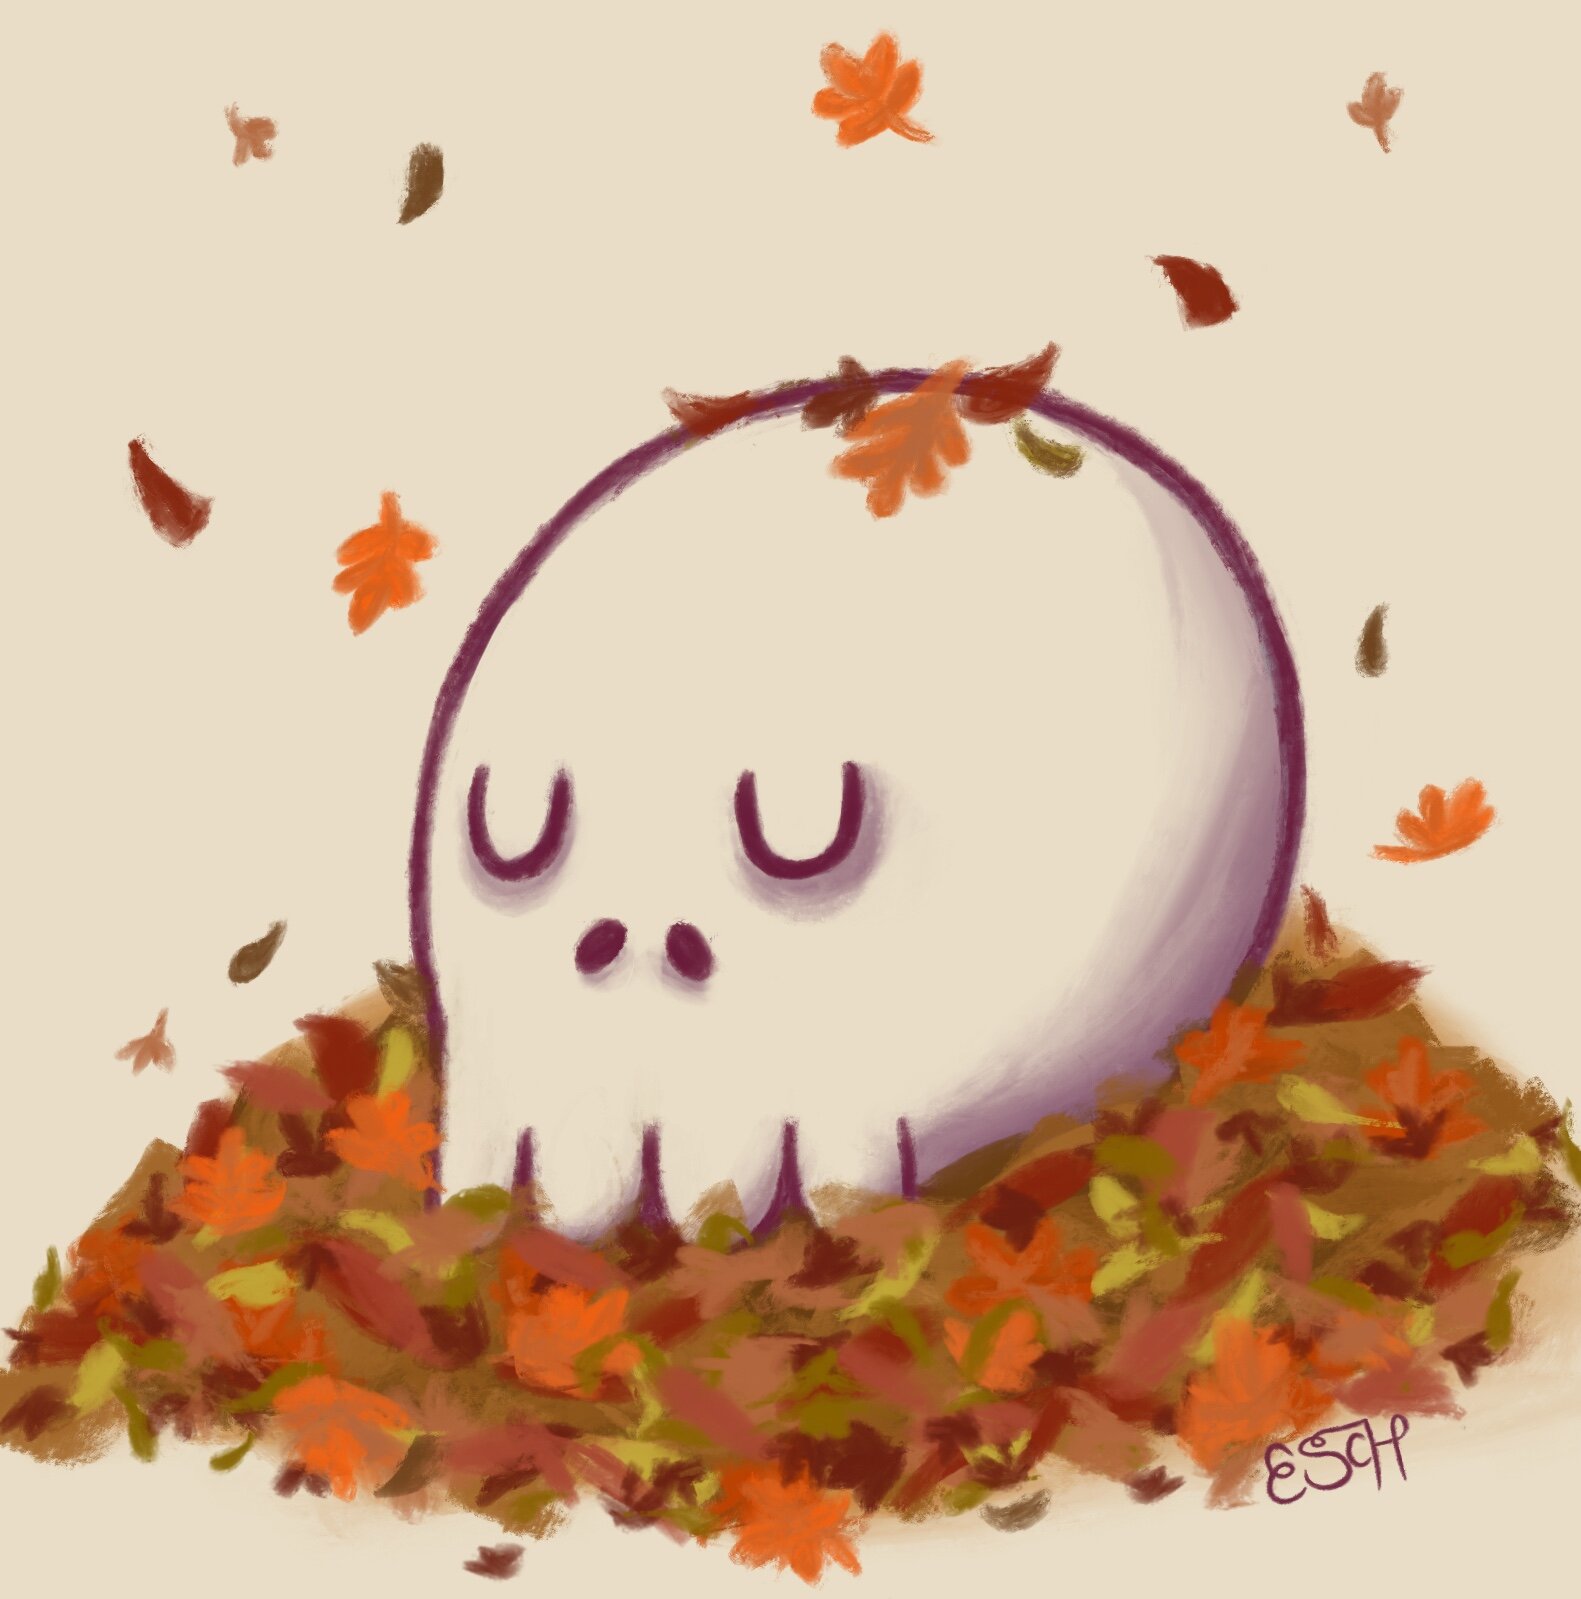 Sleepy skull - Autumn 2018